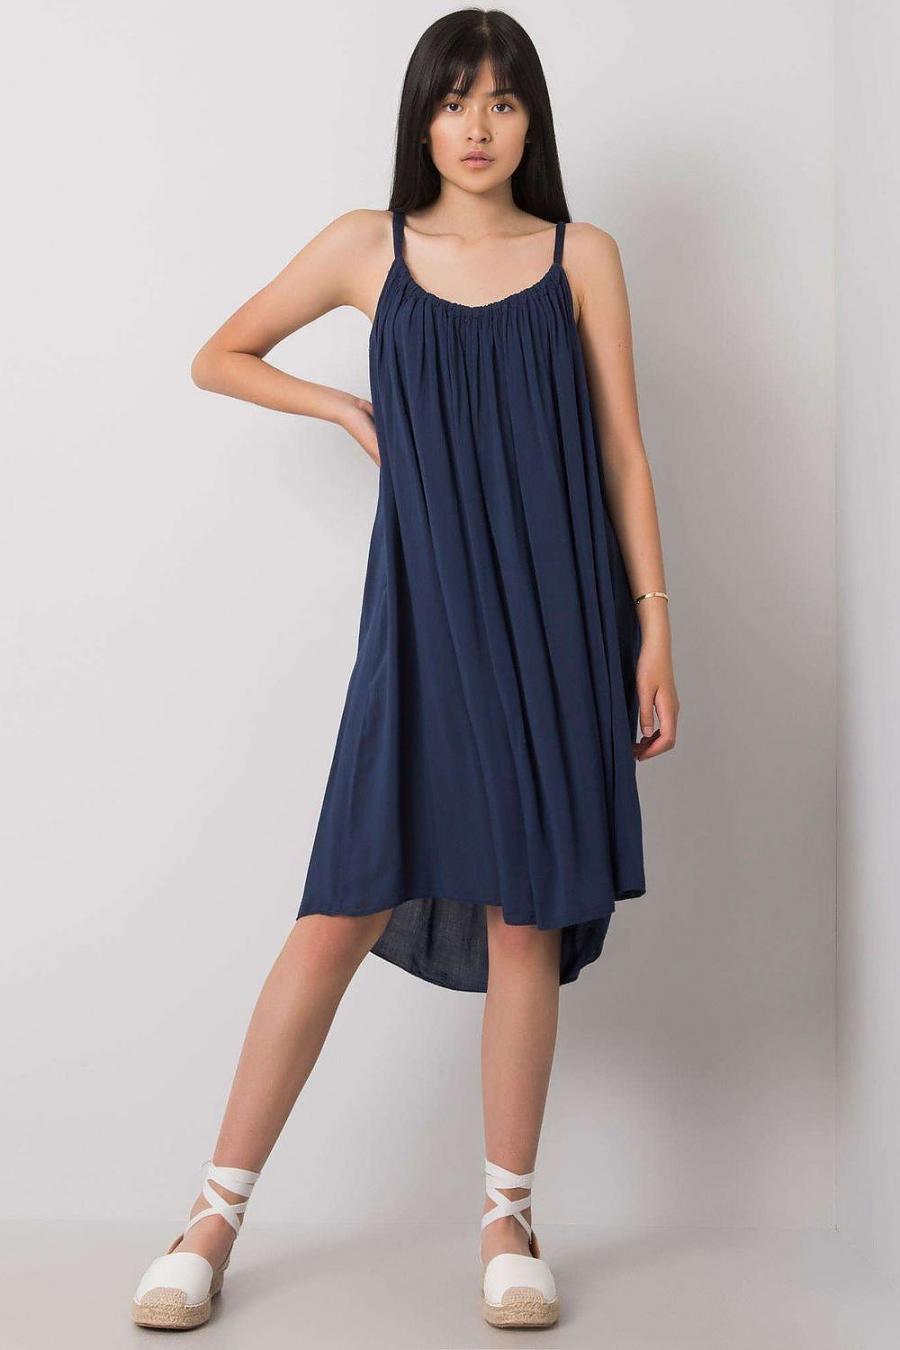 Ostatní značky šaty dámské 165898 - Tmavě modrá - velikost S